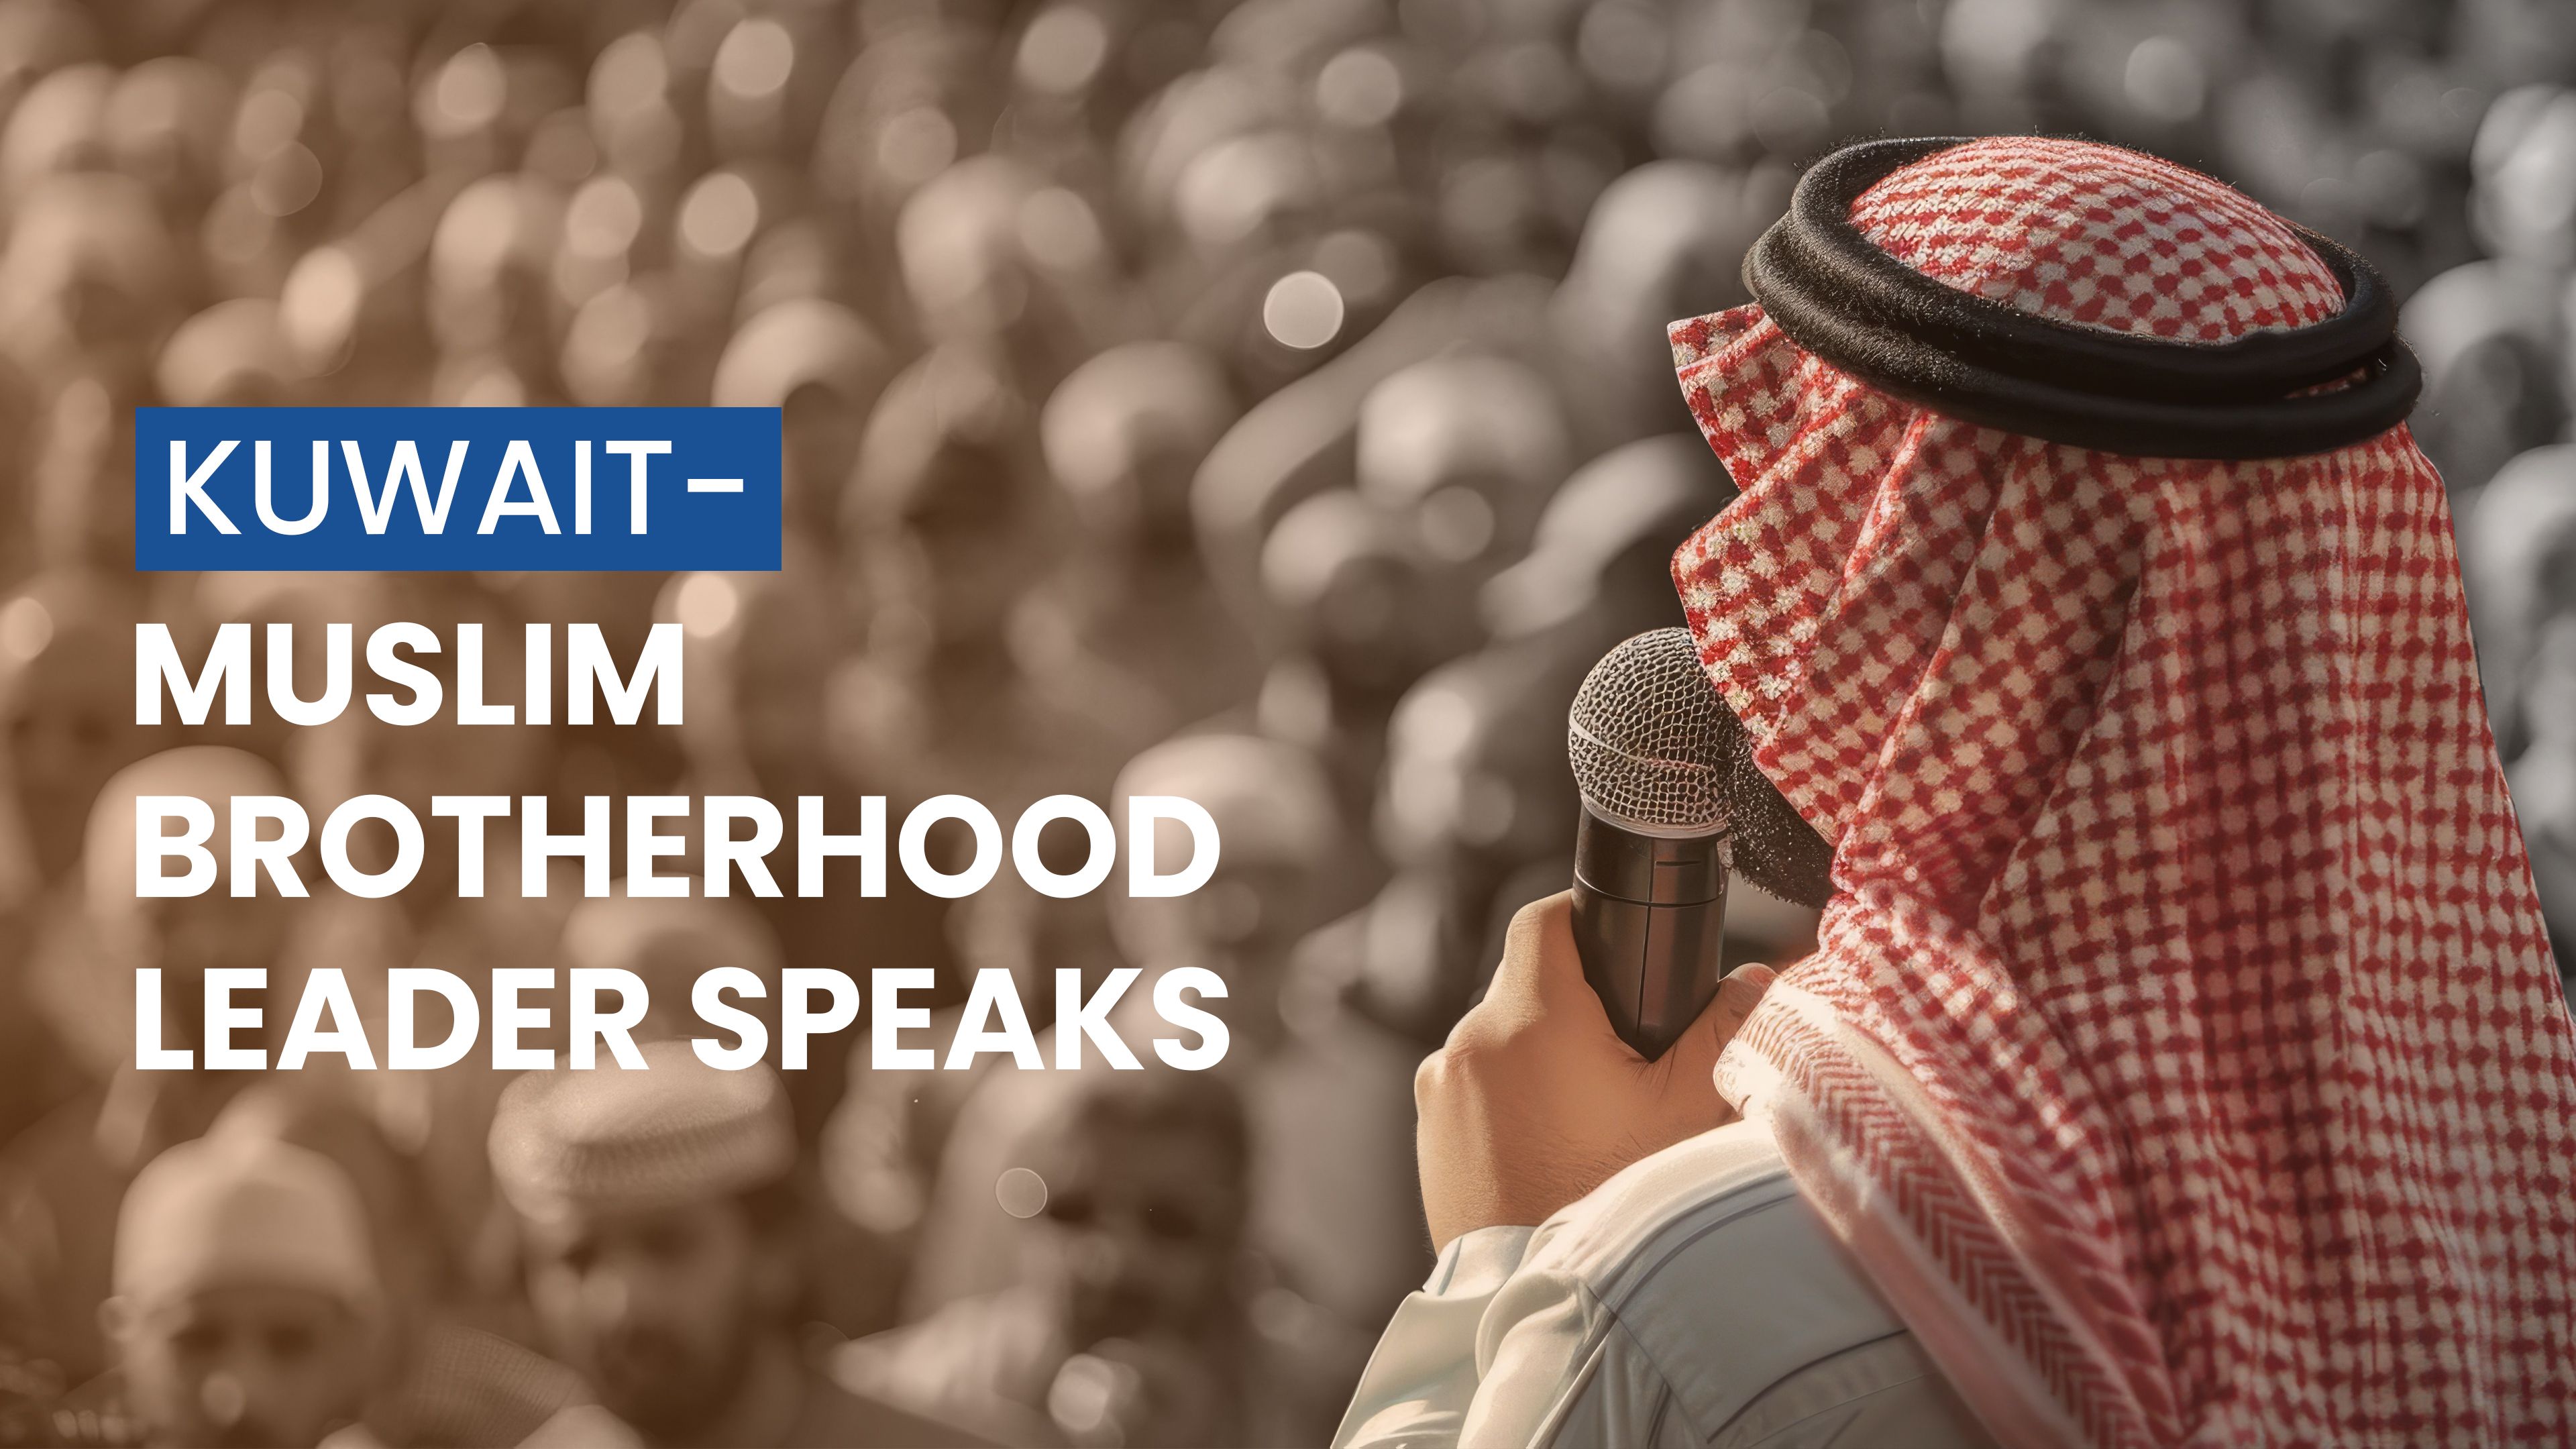 Kuwait-Muslim Brotherhood Leader Speaks